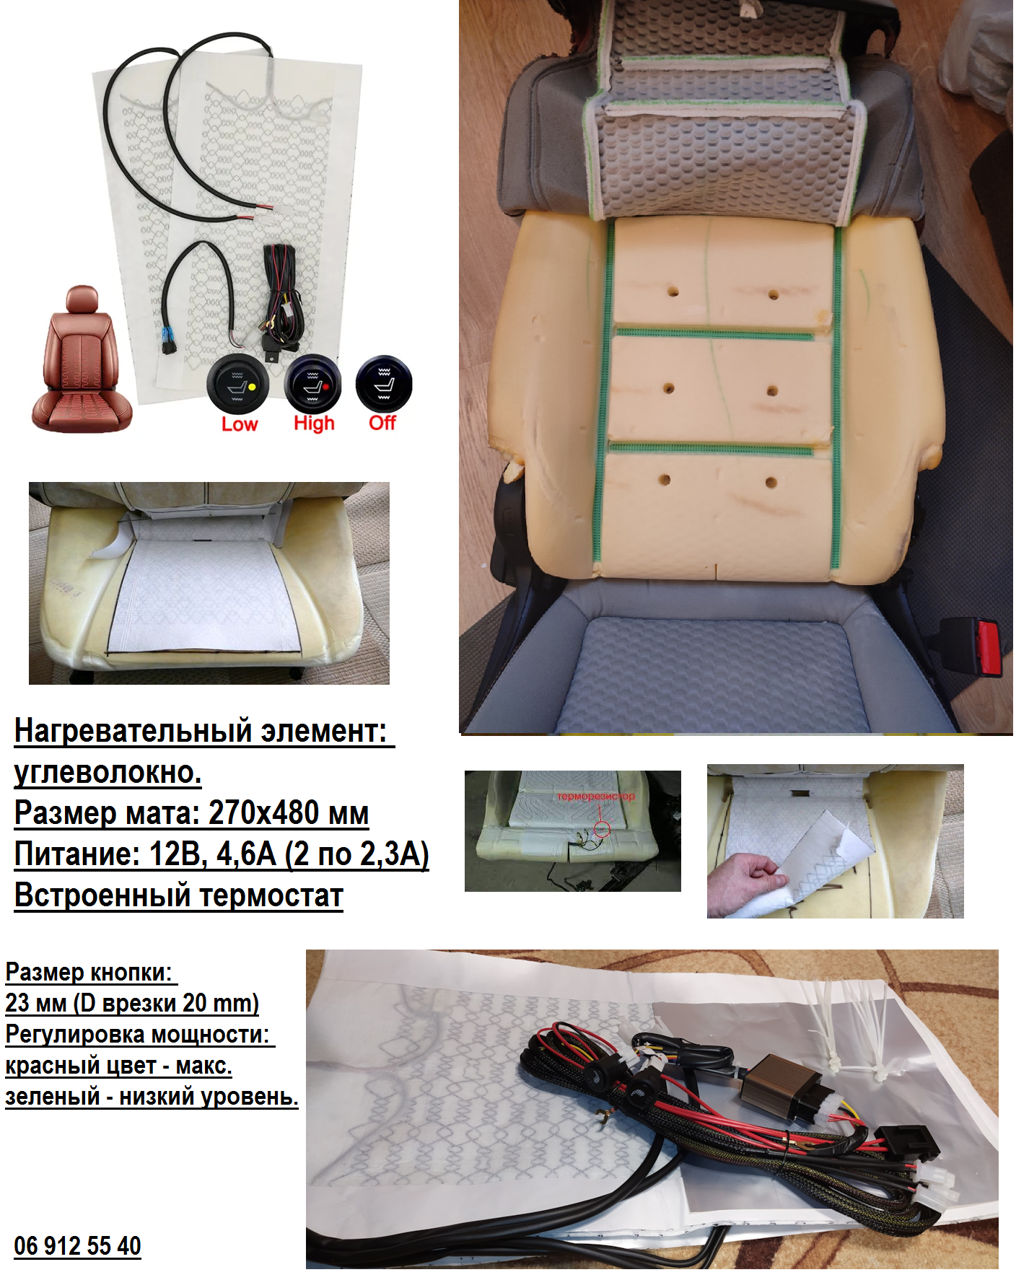 Как купить подогрев сидений Toyota RAV4 на Запчасть.com.ua